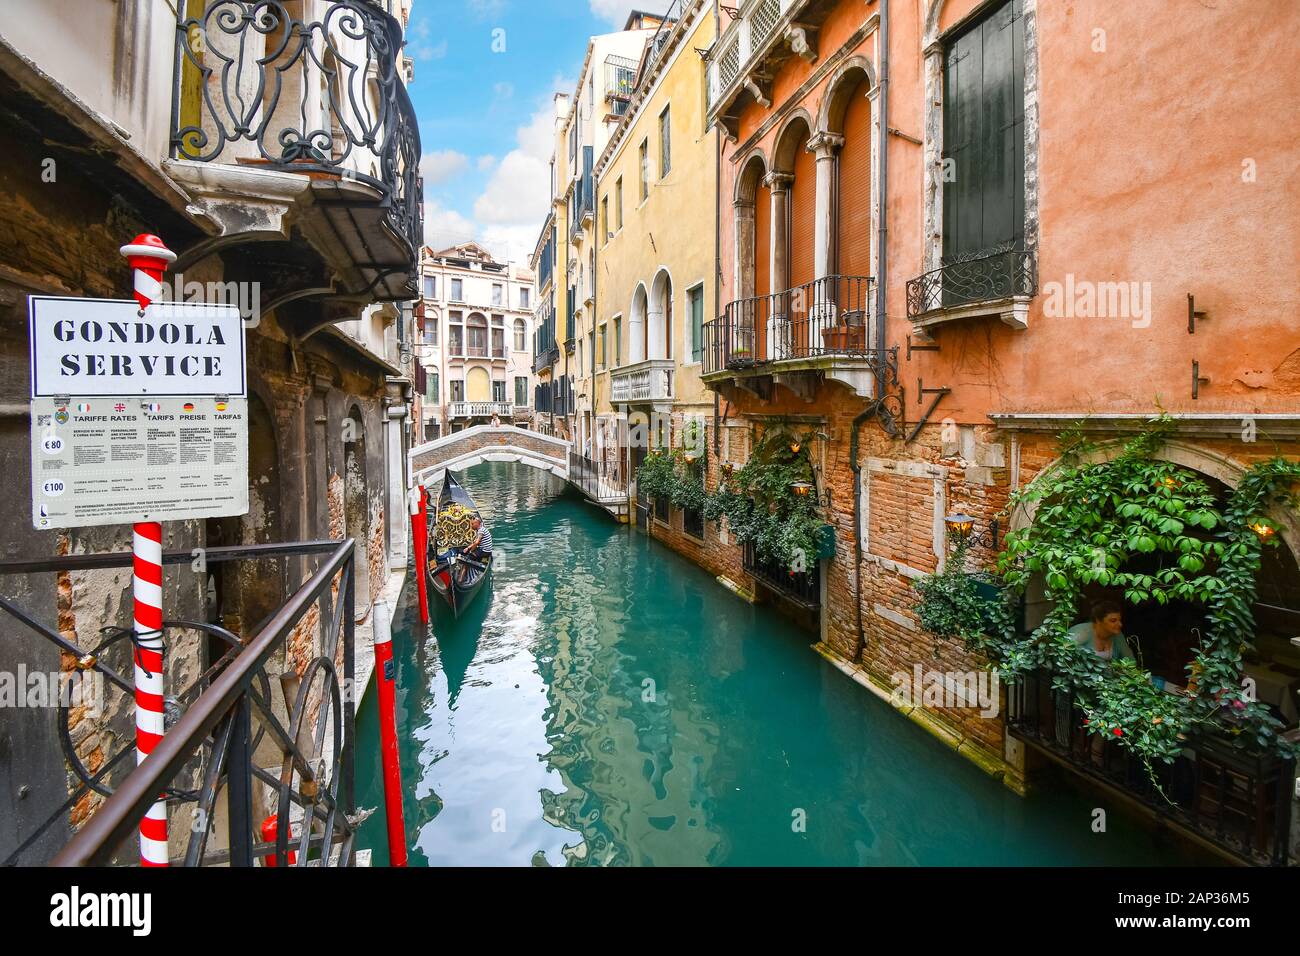 Un gondolier attend les clients touristiques à un point de service, gondole sur un pittoresque petit canal à Venise, Italie Banque D'Images